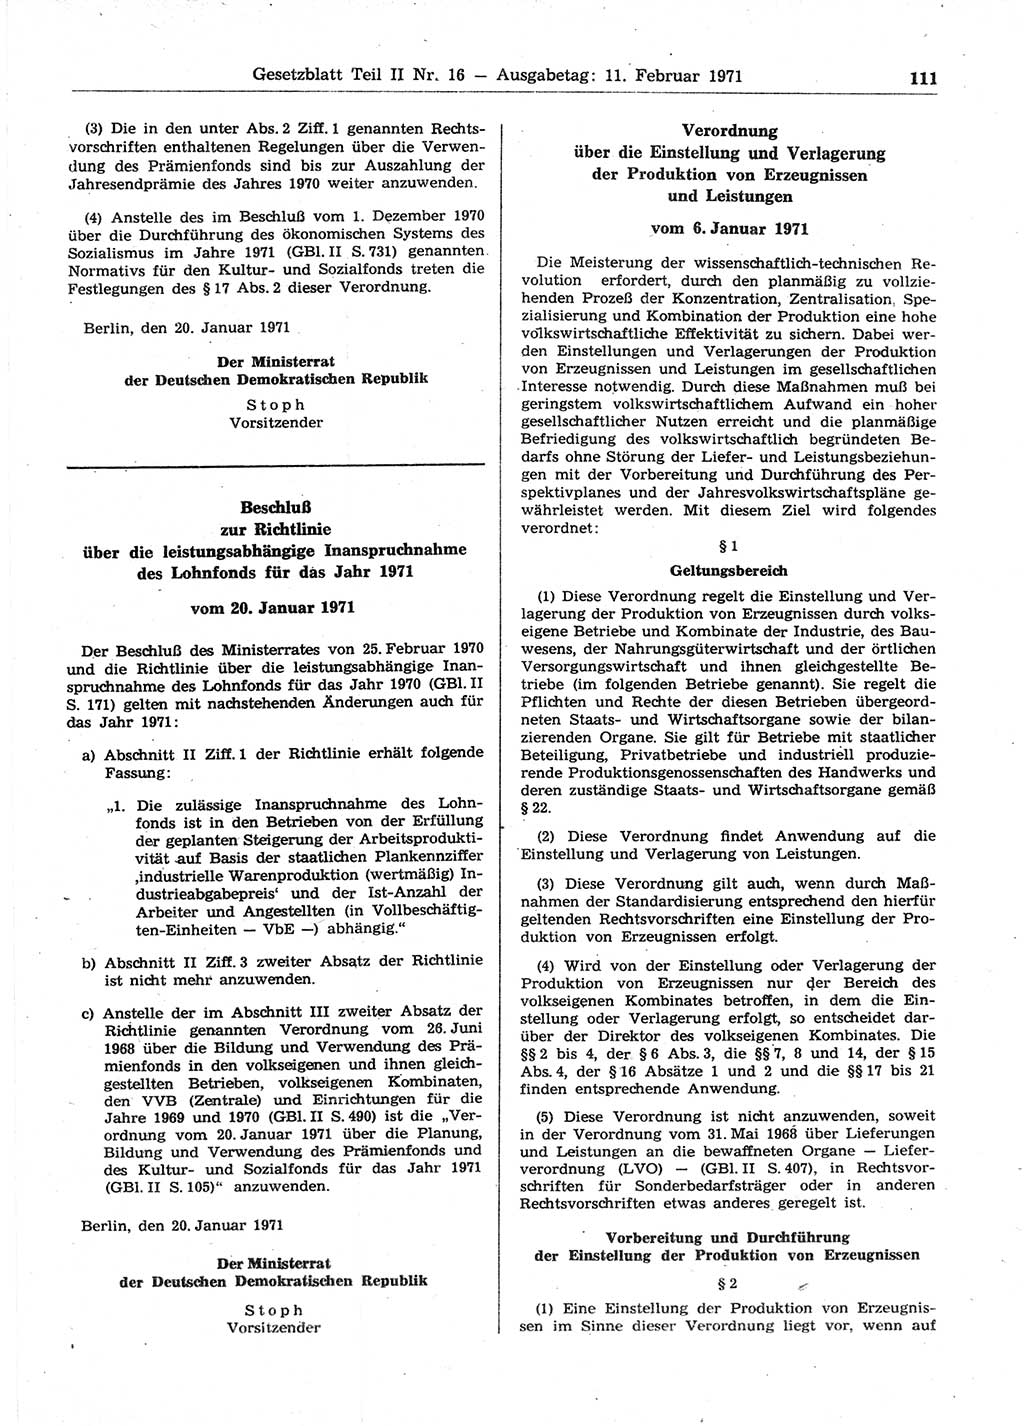 Gesetzblatt (GBl.) der Deutschen Demokratischen Republik (DDR) Teil ⅠⅠ 1971, Seite 111 (GBl. DDR ⅠⅠ 1971, S. 111)